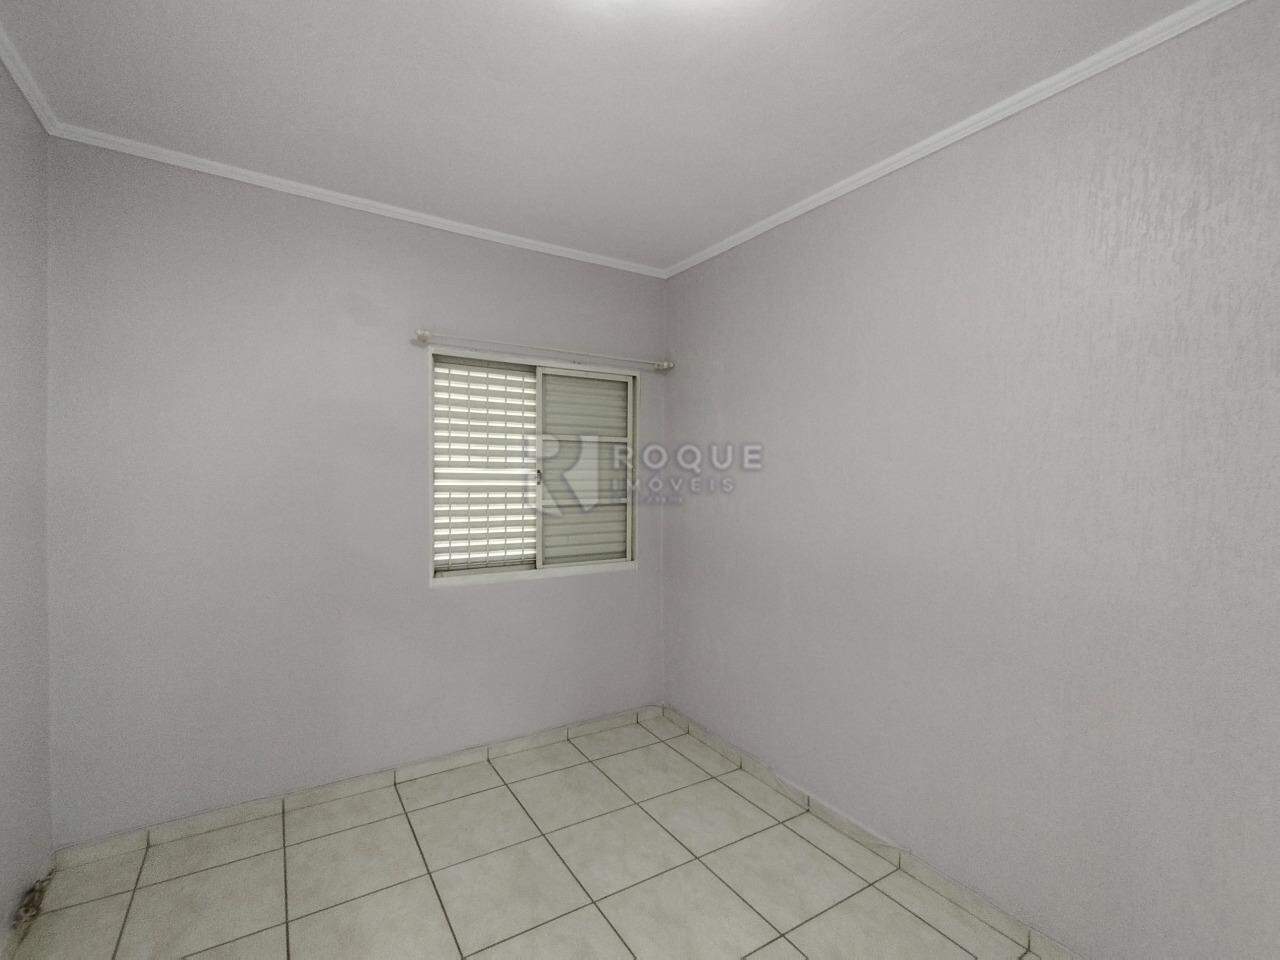 Apartamento para aluguel no bairro Cidade Jardim: Sala 2